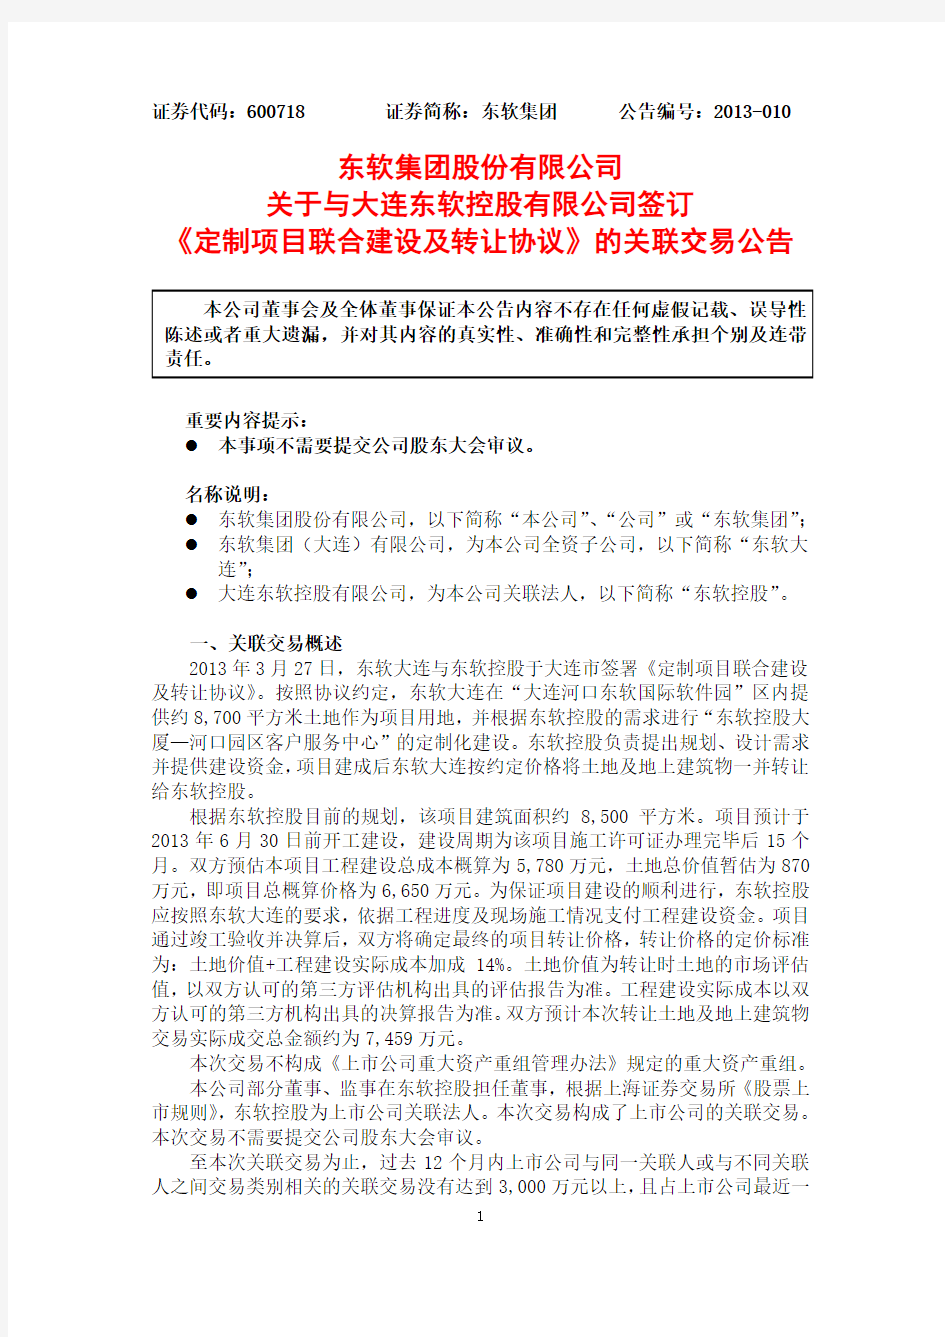 东软集团股份有限公司关于与大连东软控股有限公司签订.pdf